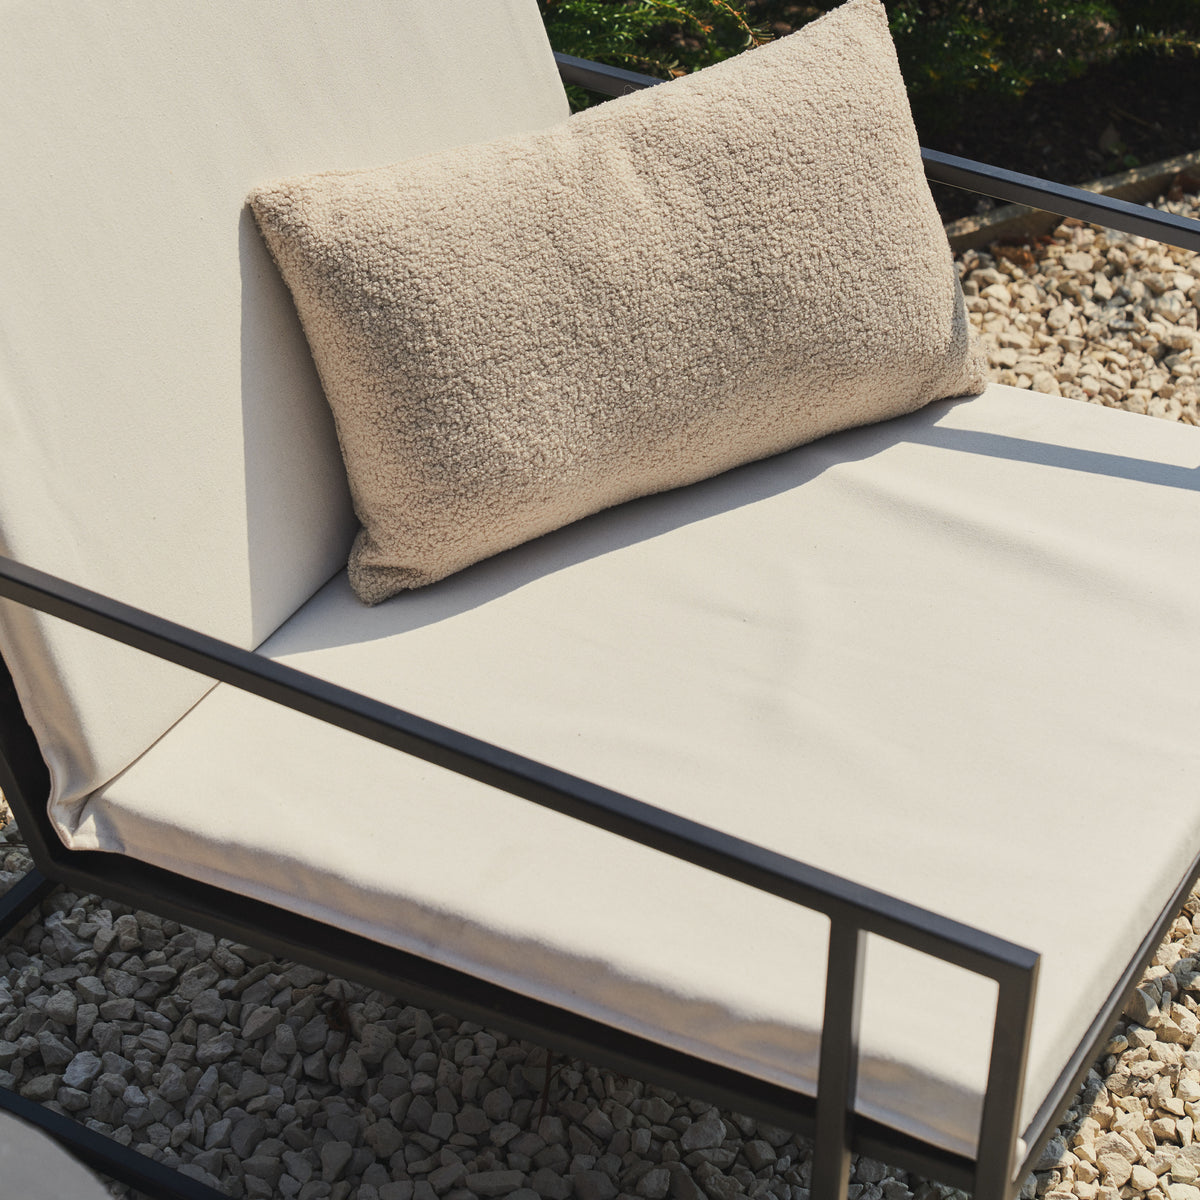 Detail shot of Sand Modern Rectangular Garden Chair on gravel